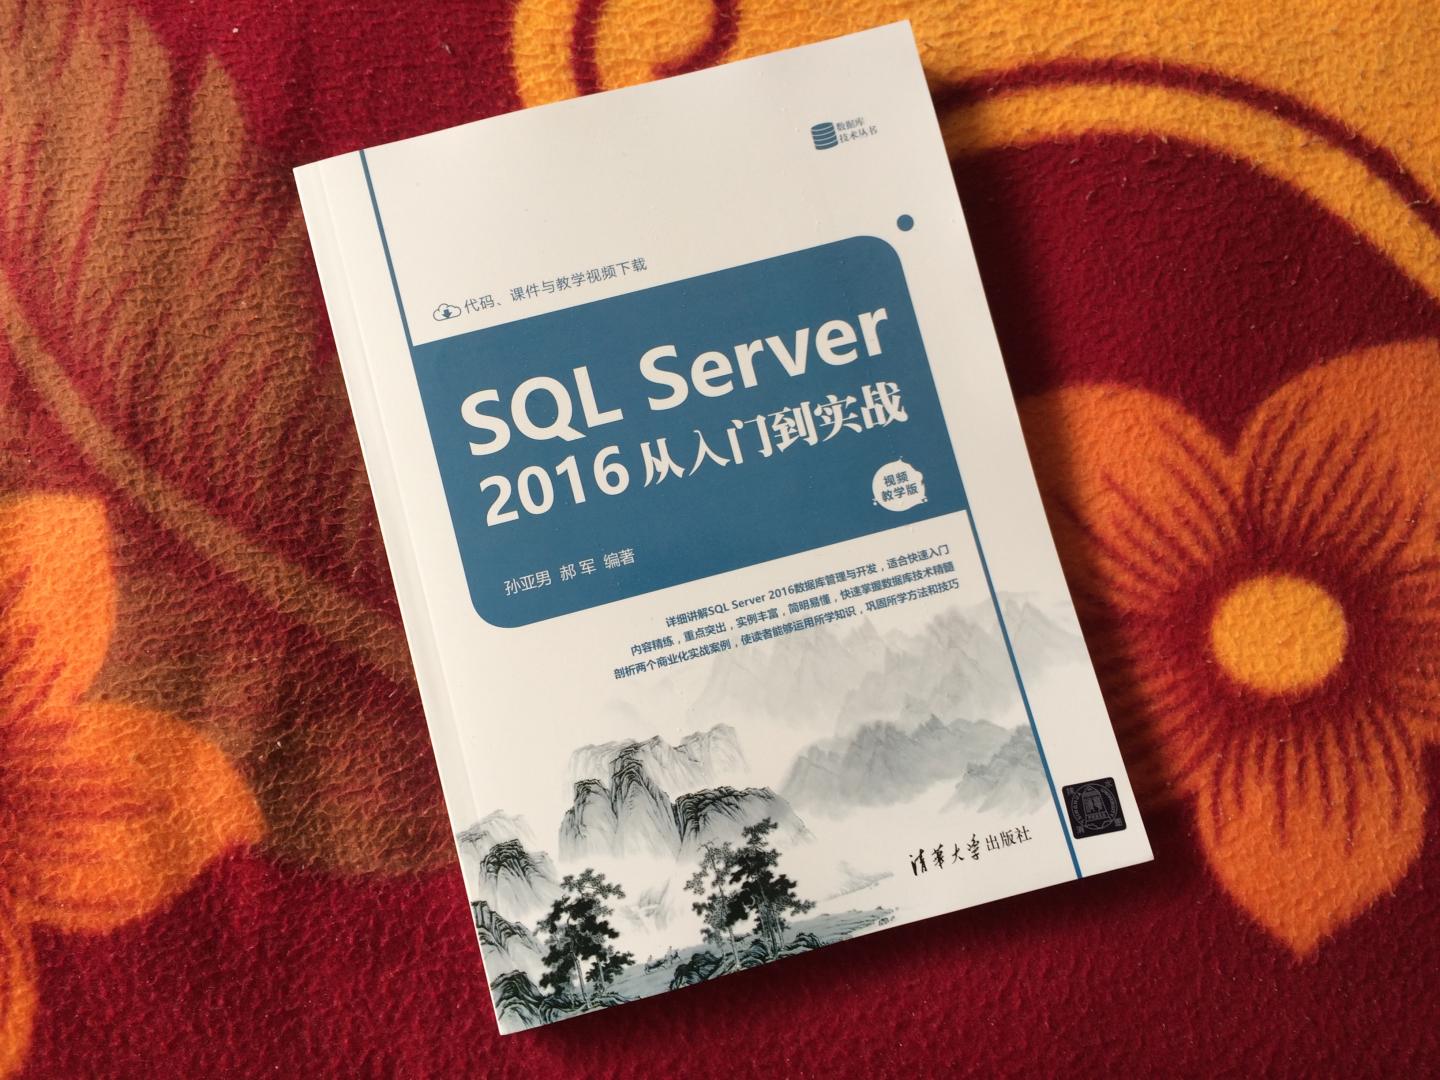 总体来说写的还不错，很基础，非常适合SQL SERVER的初学者学习使用！很通俗易懂~